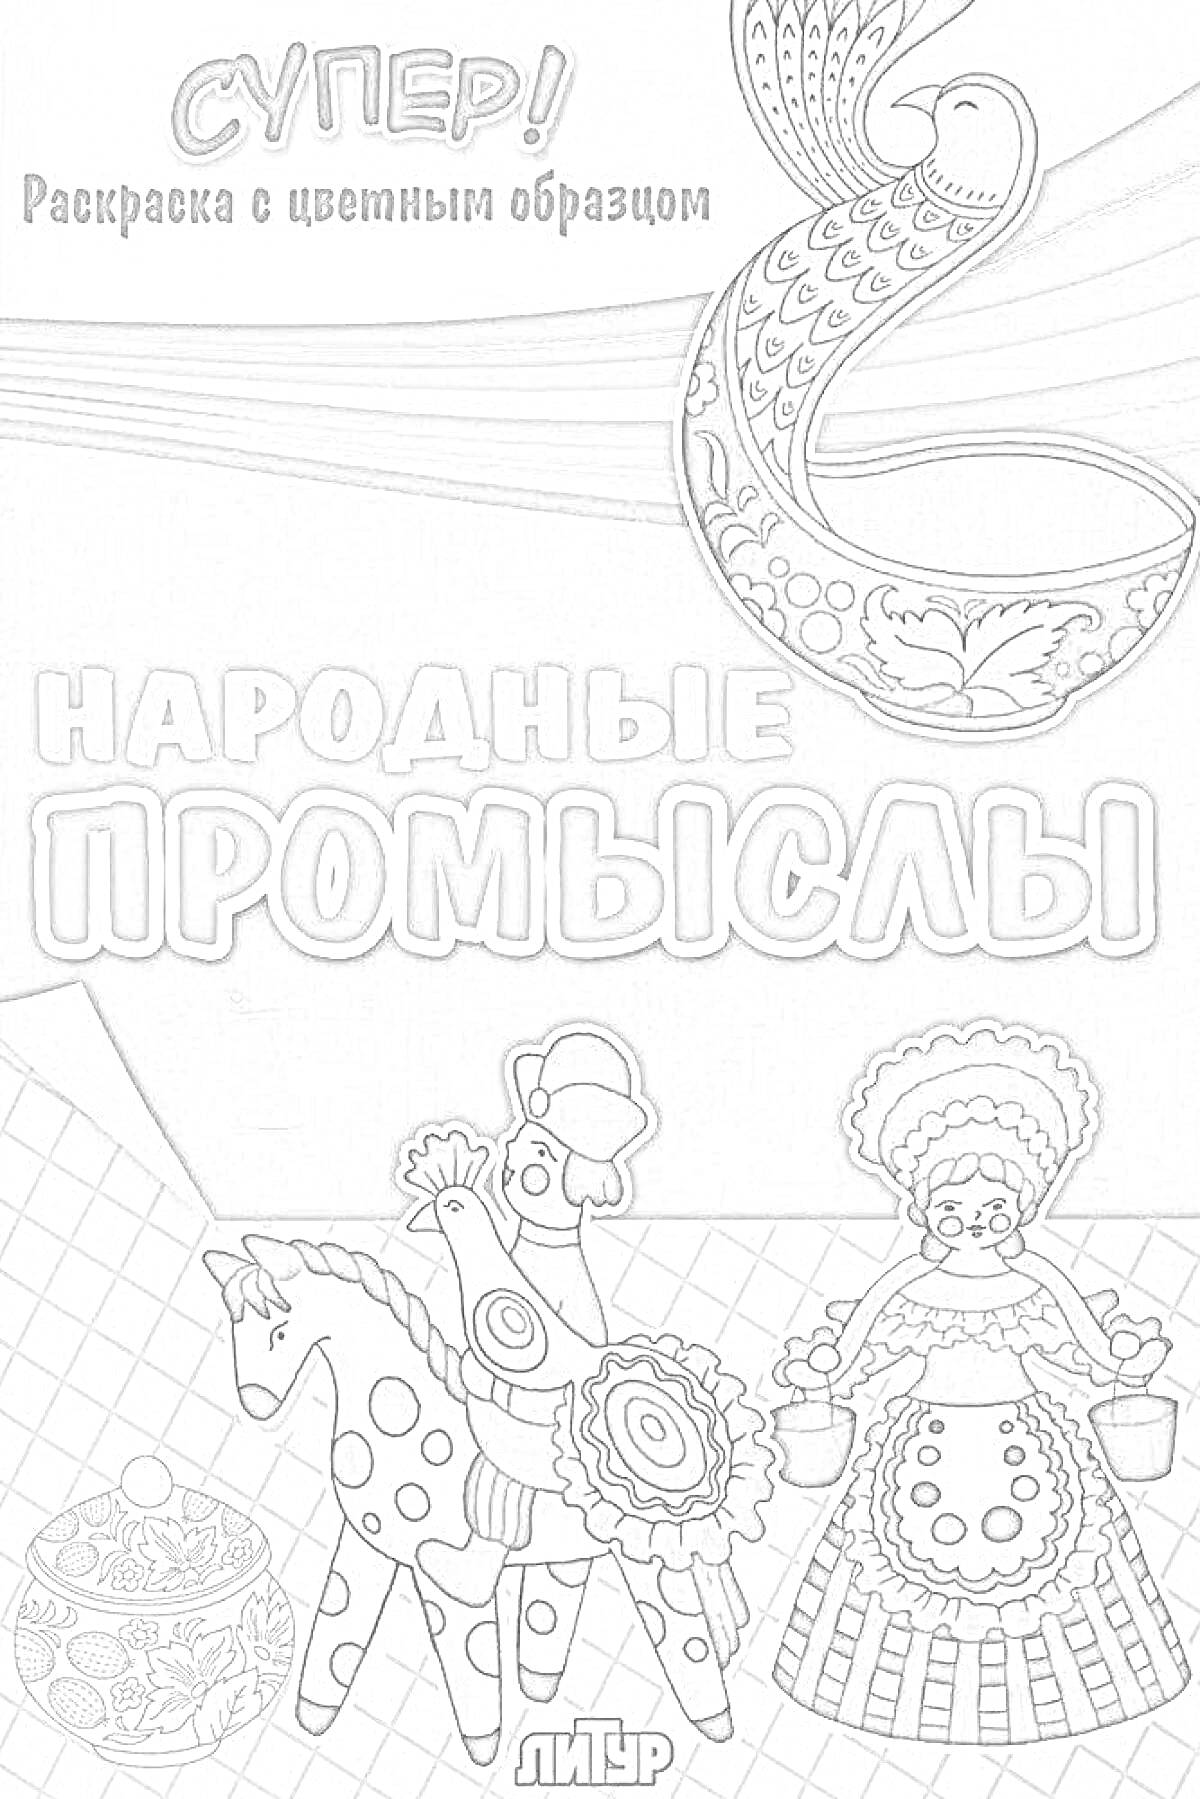 Раскраска Народные промыслы России - конь в народном стиле, матрёшка, посуда с традиционным узором, петушок